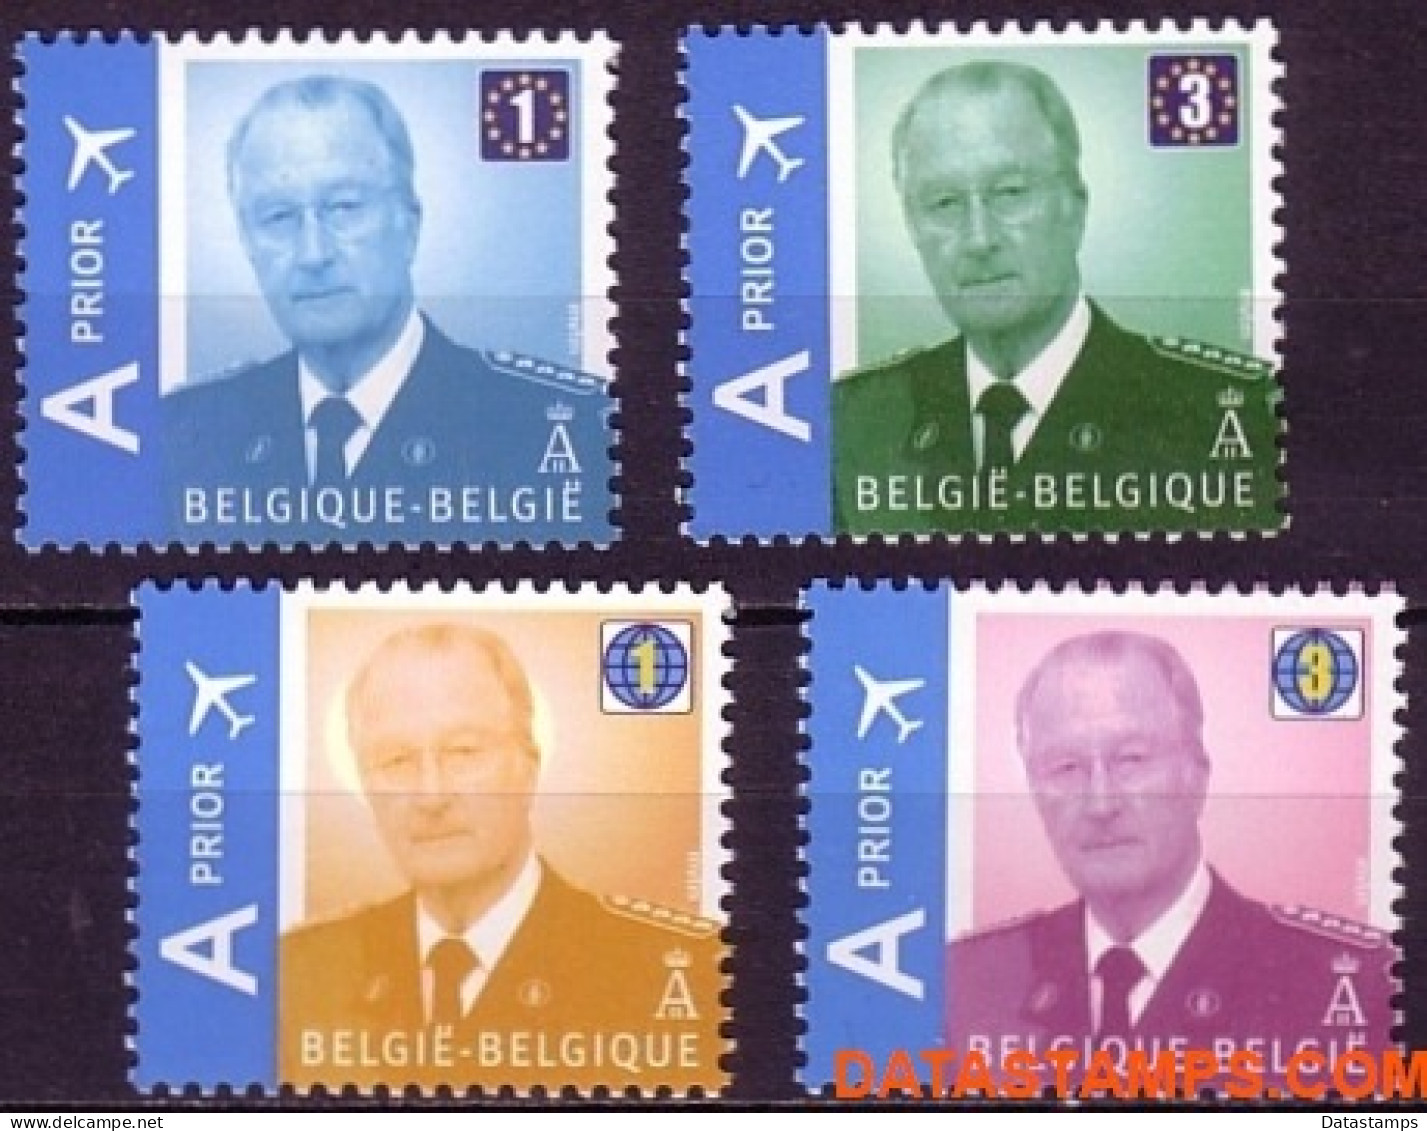 België 2009 - Mi:3913/3916, Yv:3848/3851, OBP:3867/3870, Stamp - XX - King Albert II Mvtm - Nieuw Frankeringssysteem - 1993-2013 König Albert II (MVTM)